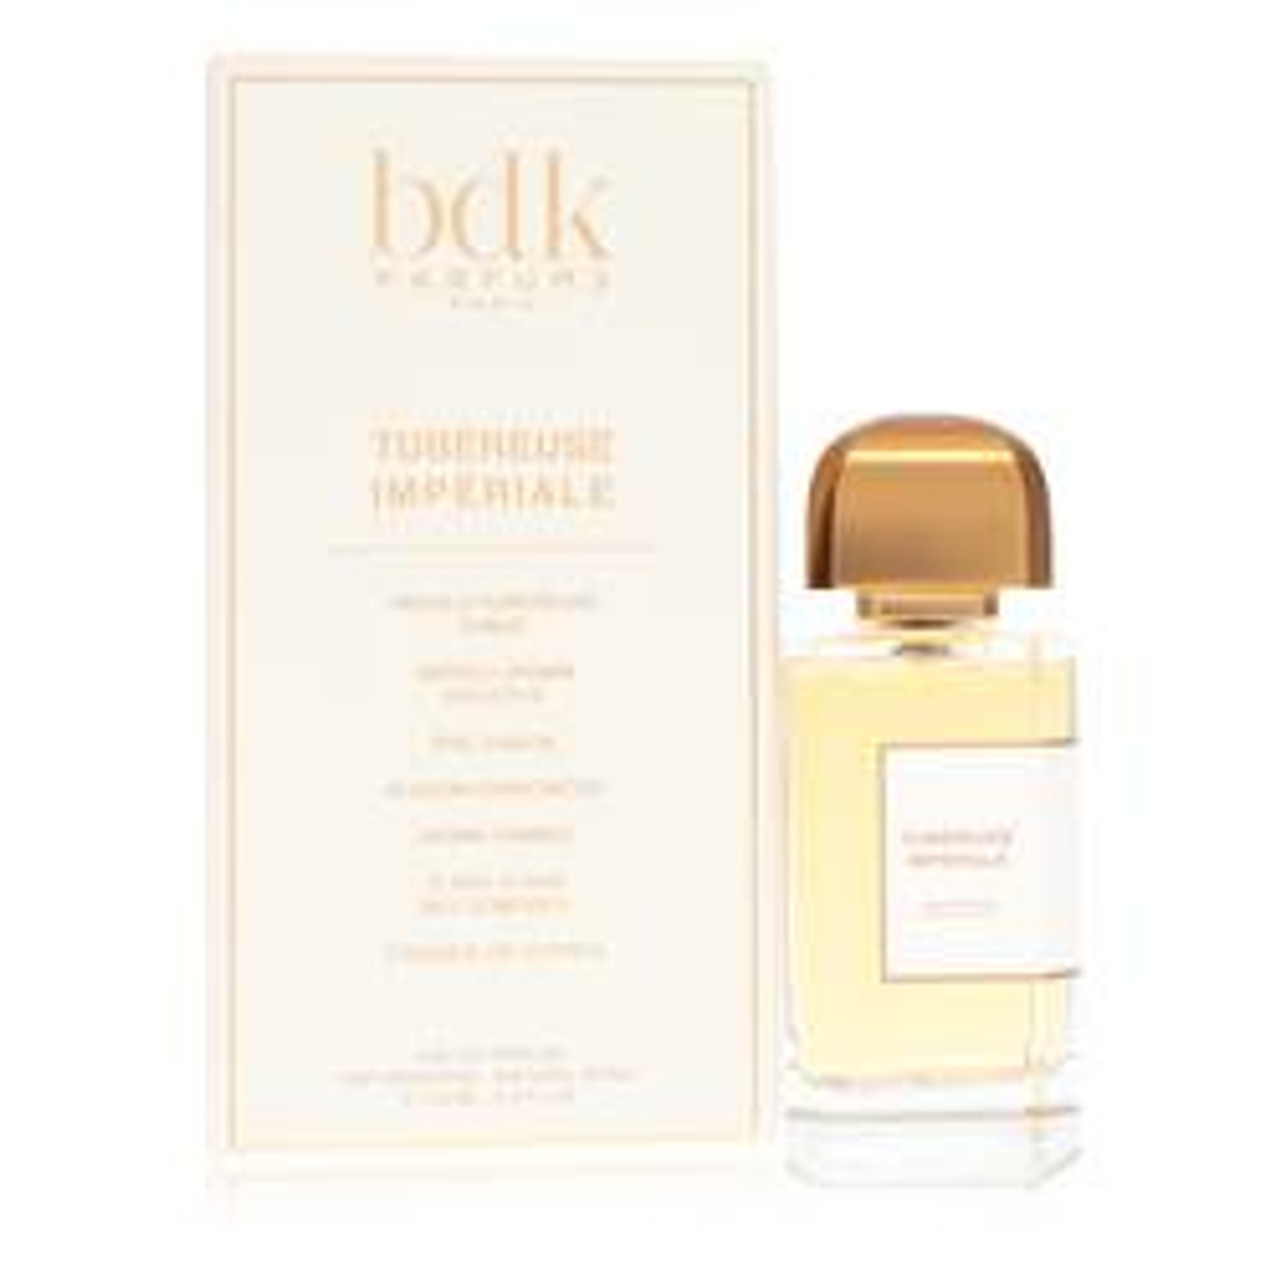 Bdk Tubereuse Imperiale Perfume By BDK Parfums Eau De Parfum Spray (Unisex) 3.4 oz for Women - *Pre-Order